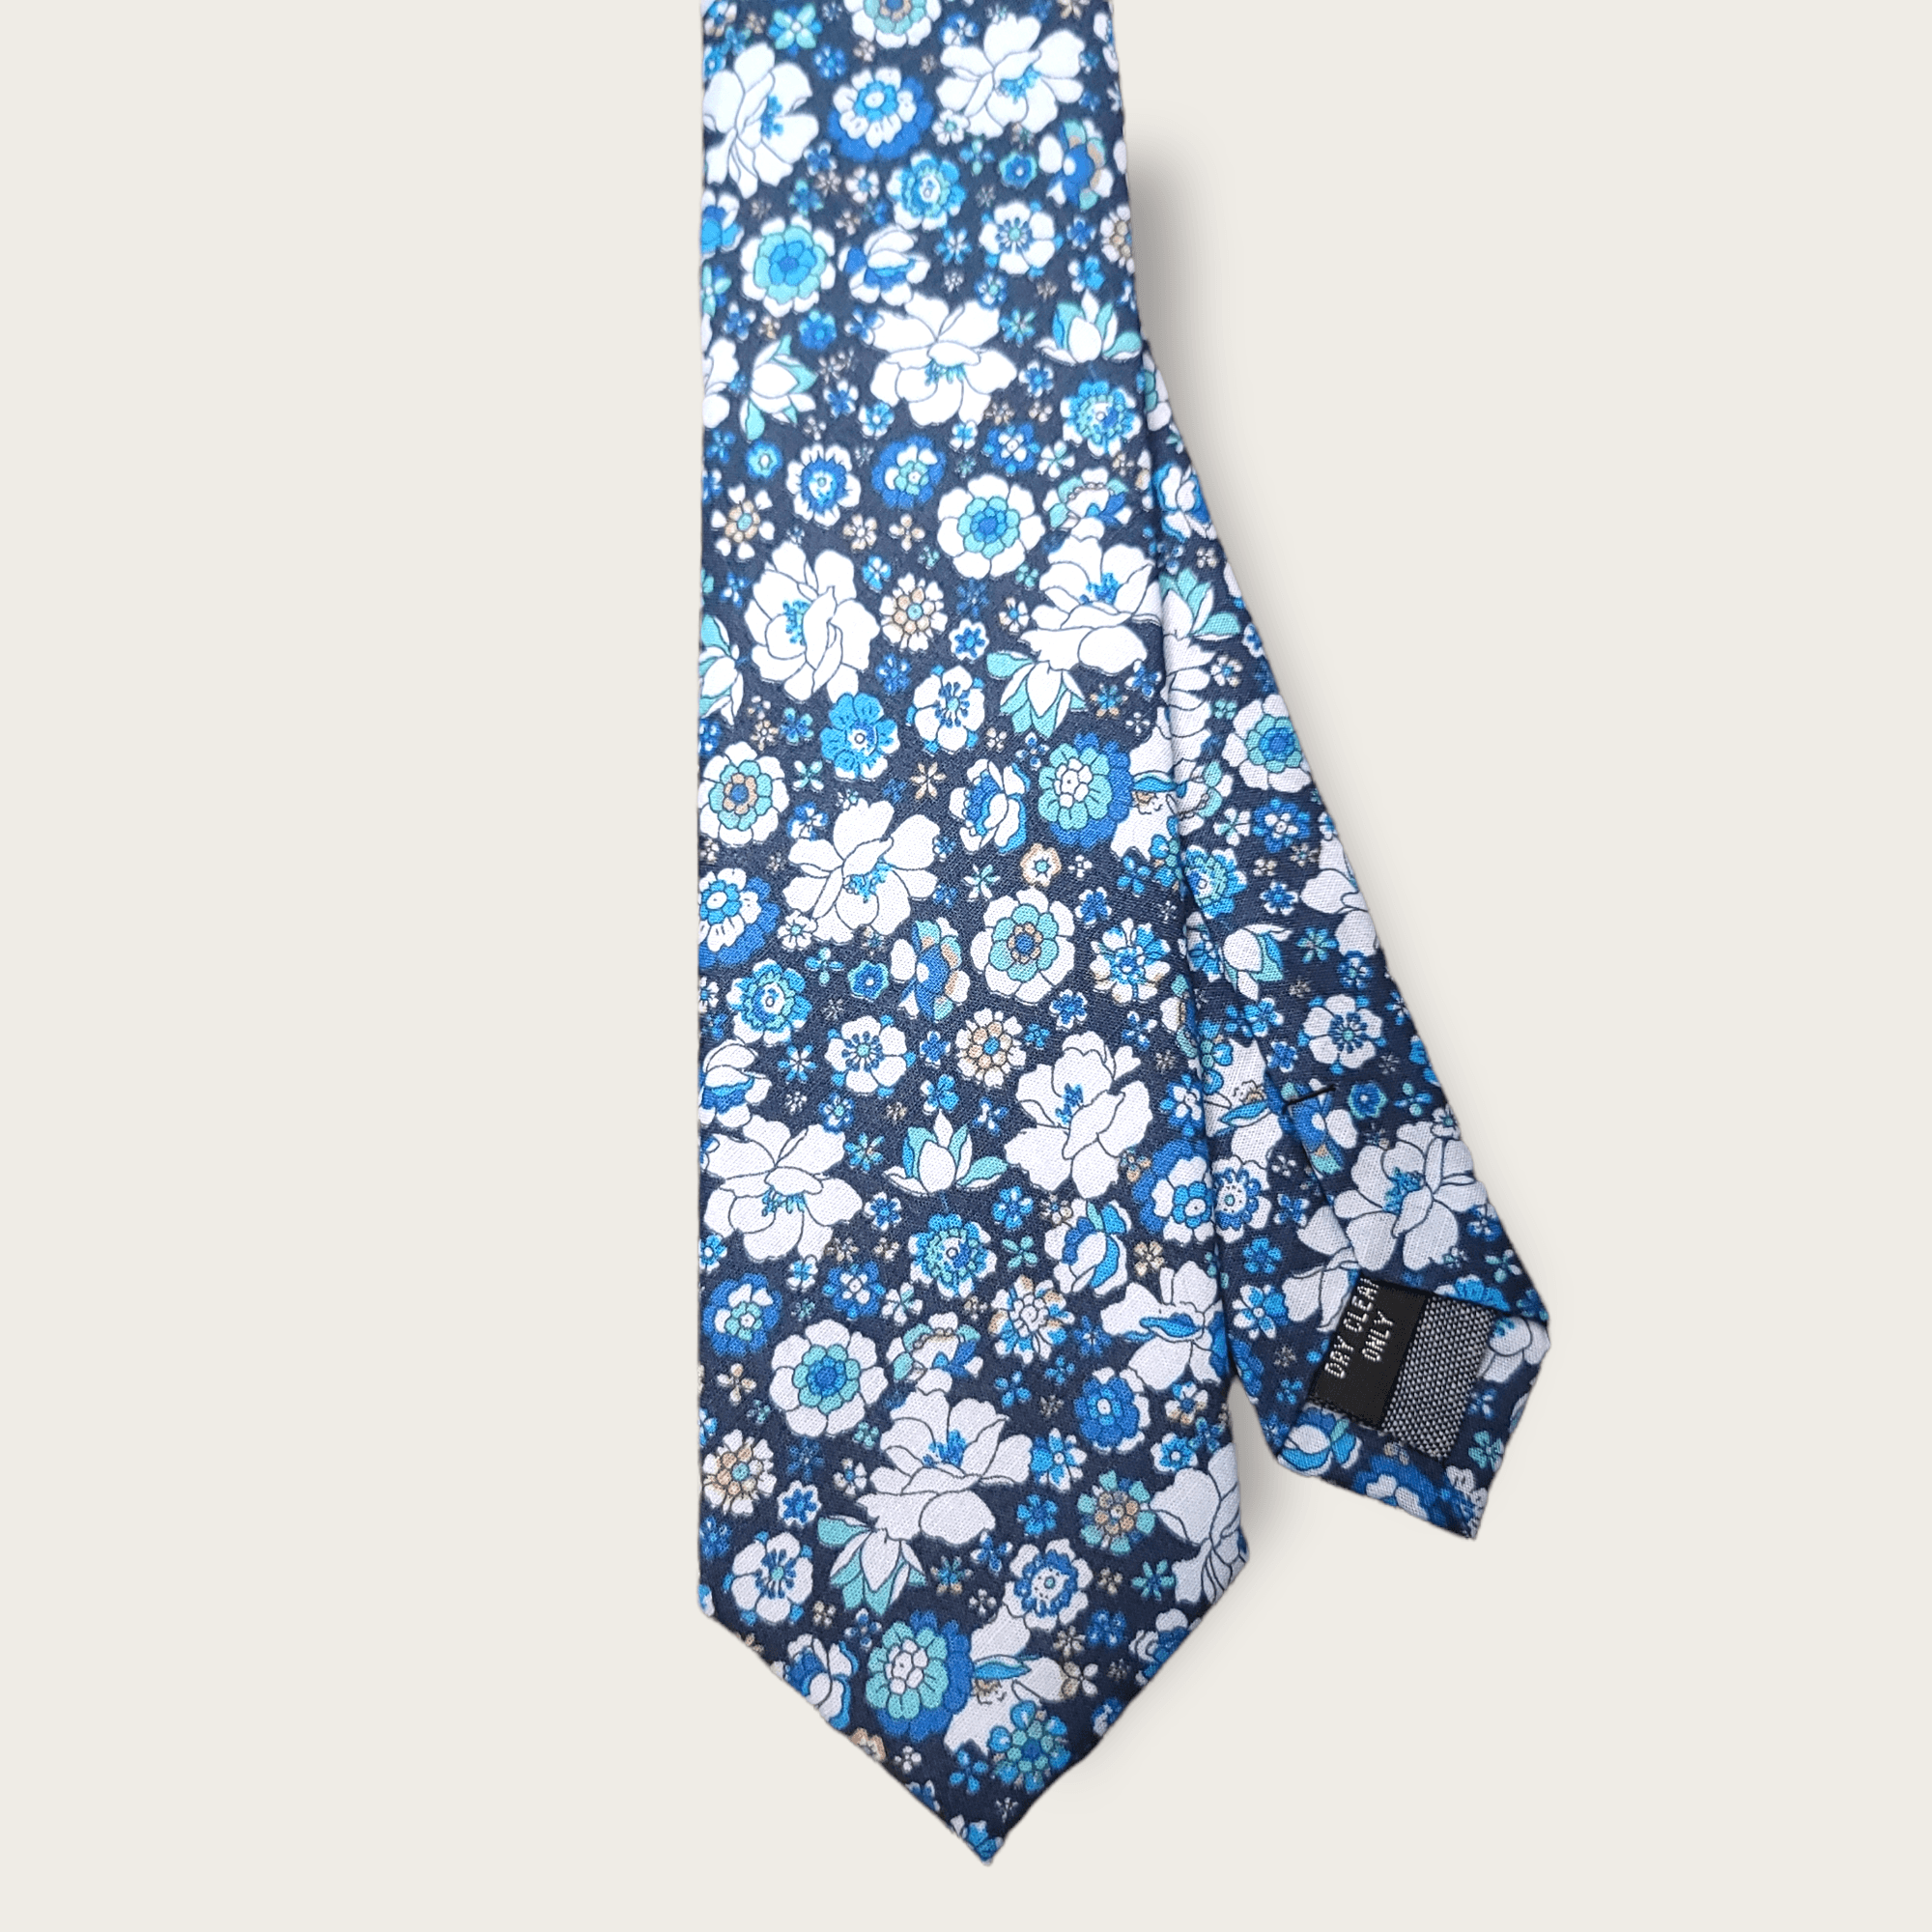 Navy Blue Floral Slim Tie - STYLETIE